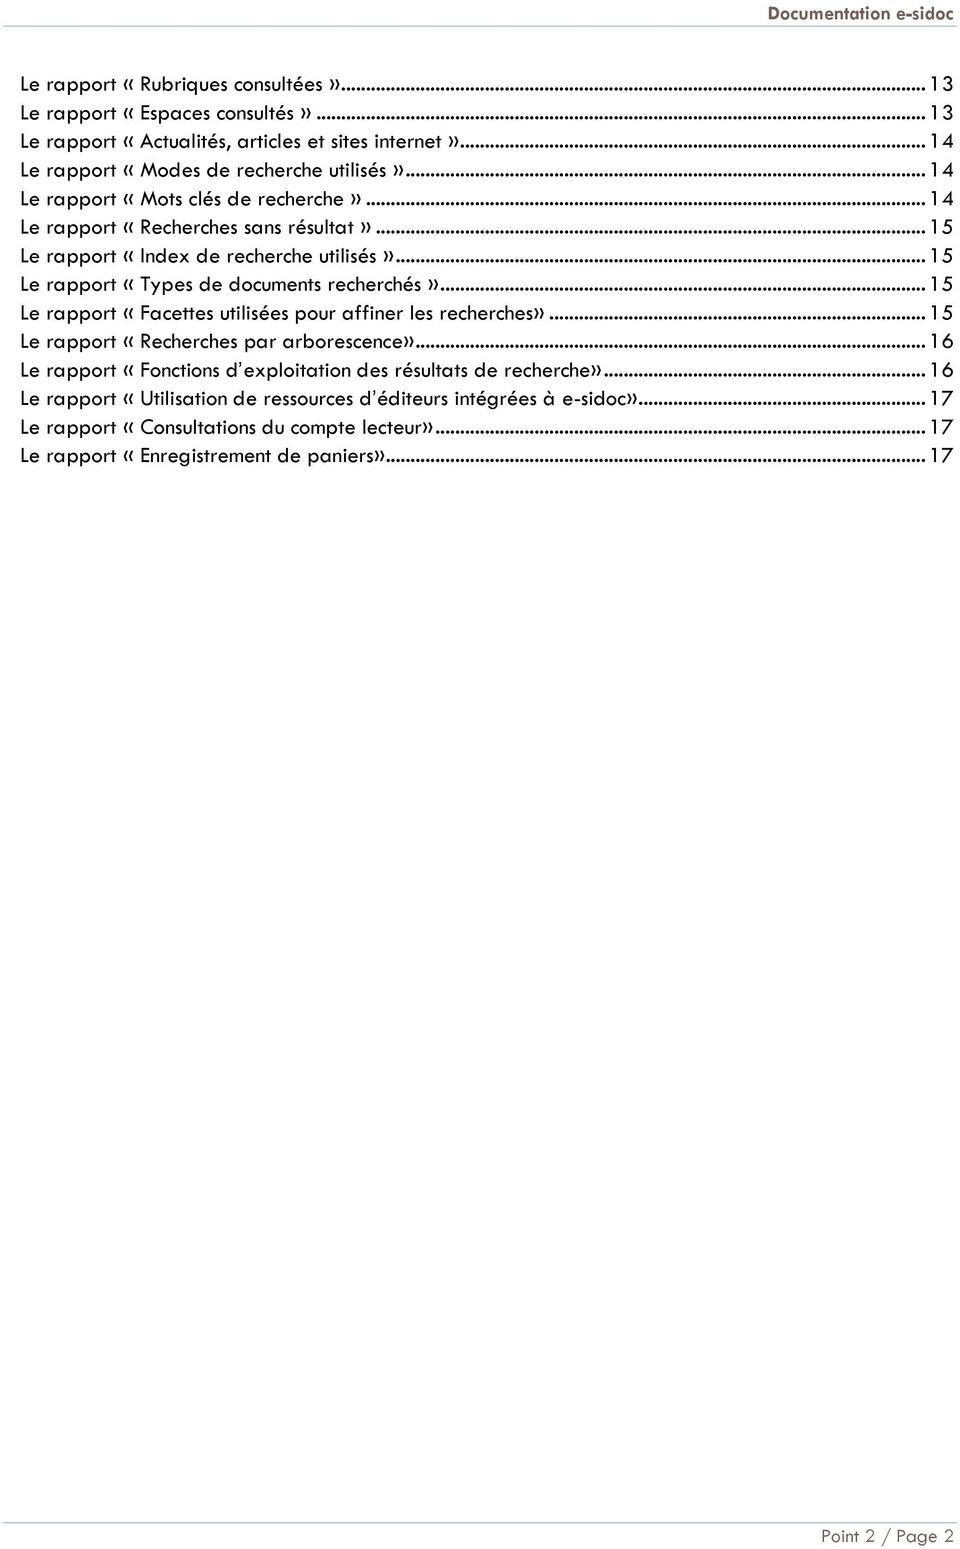 .. 15 Le rapport «Facettes utilisées pour affiner les recherches»... 15 Le rapport «Recherches par arborescence»... 16 Le rapport «Fonctions d exploitation des résultats de recherche».